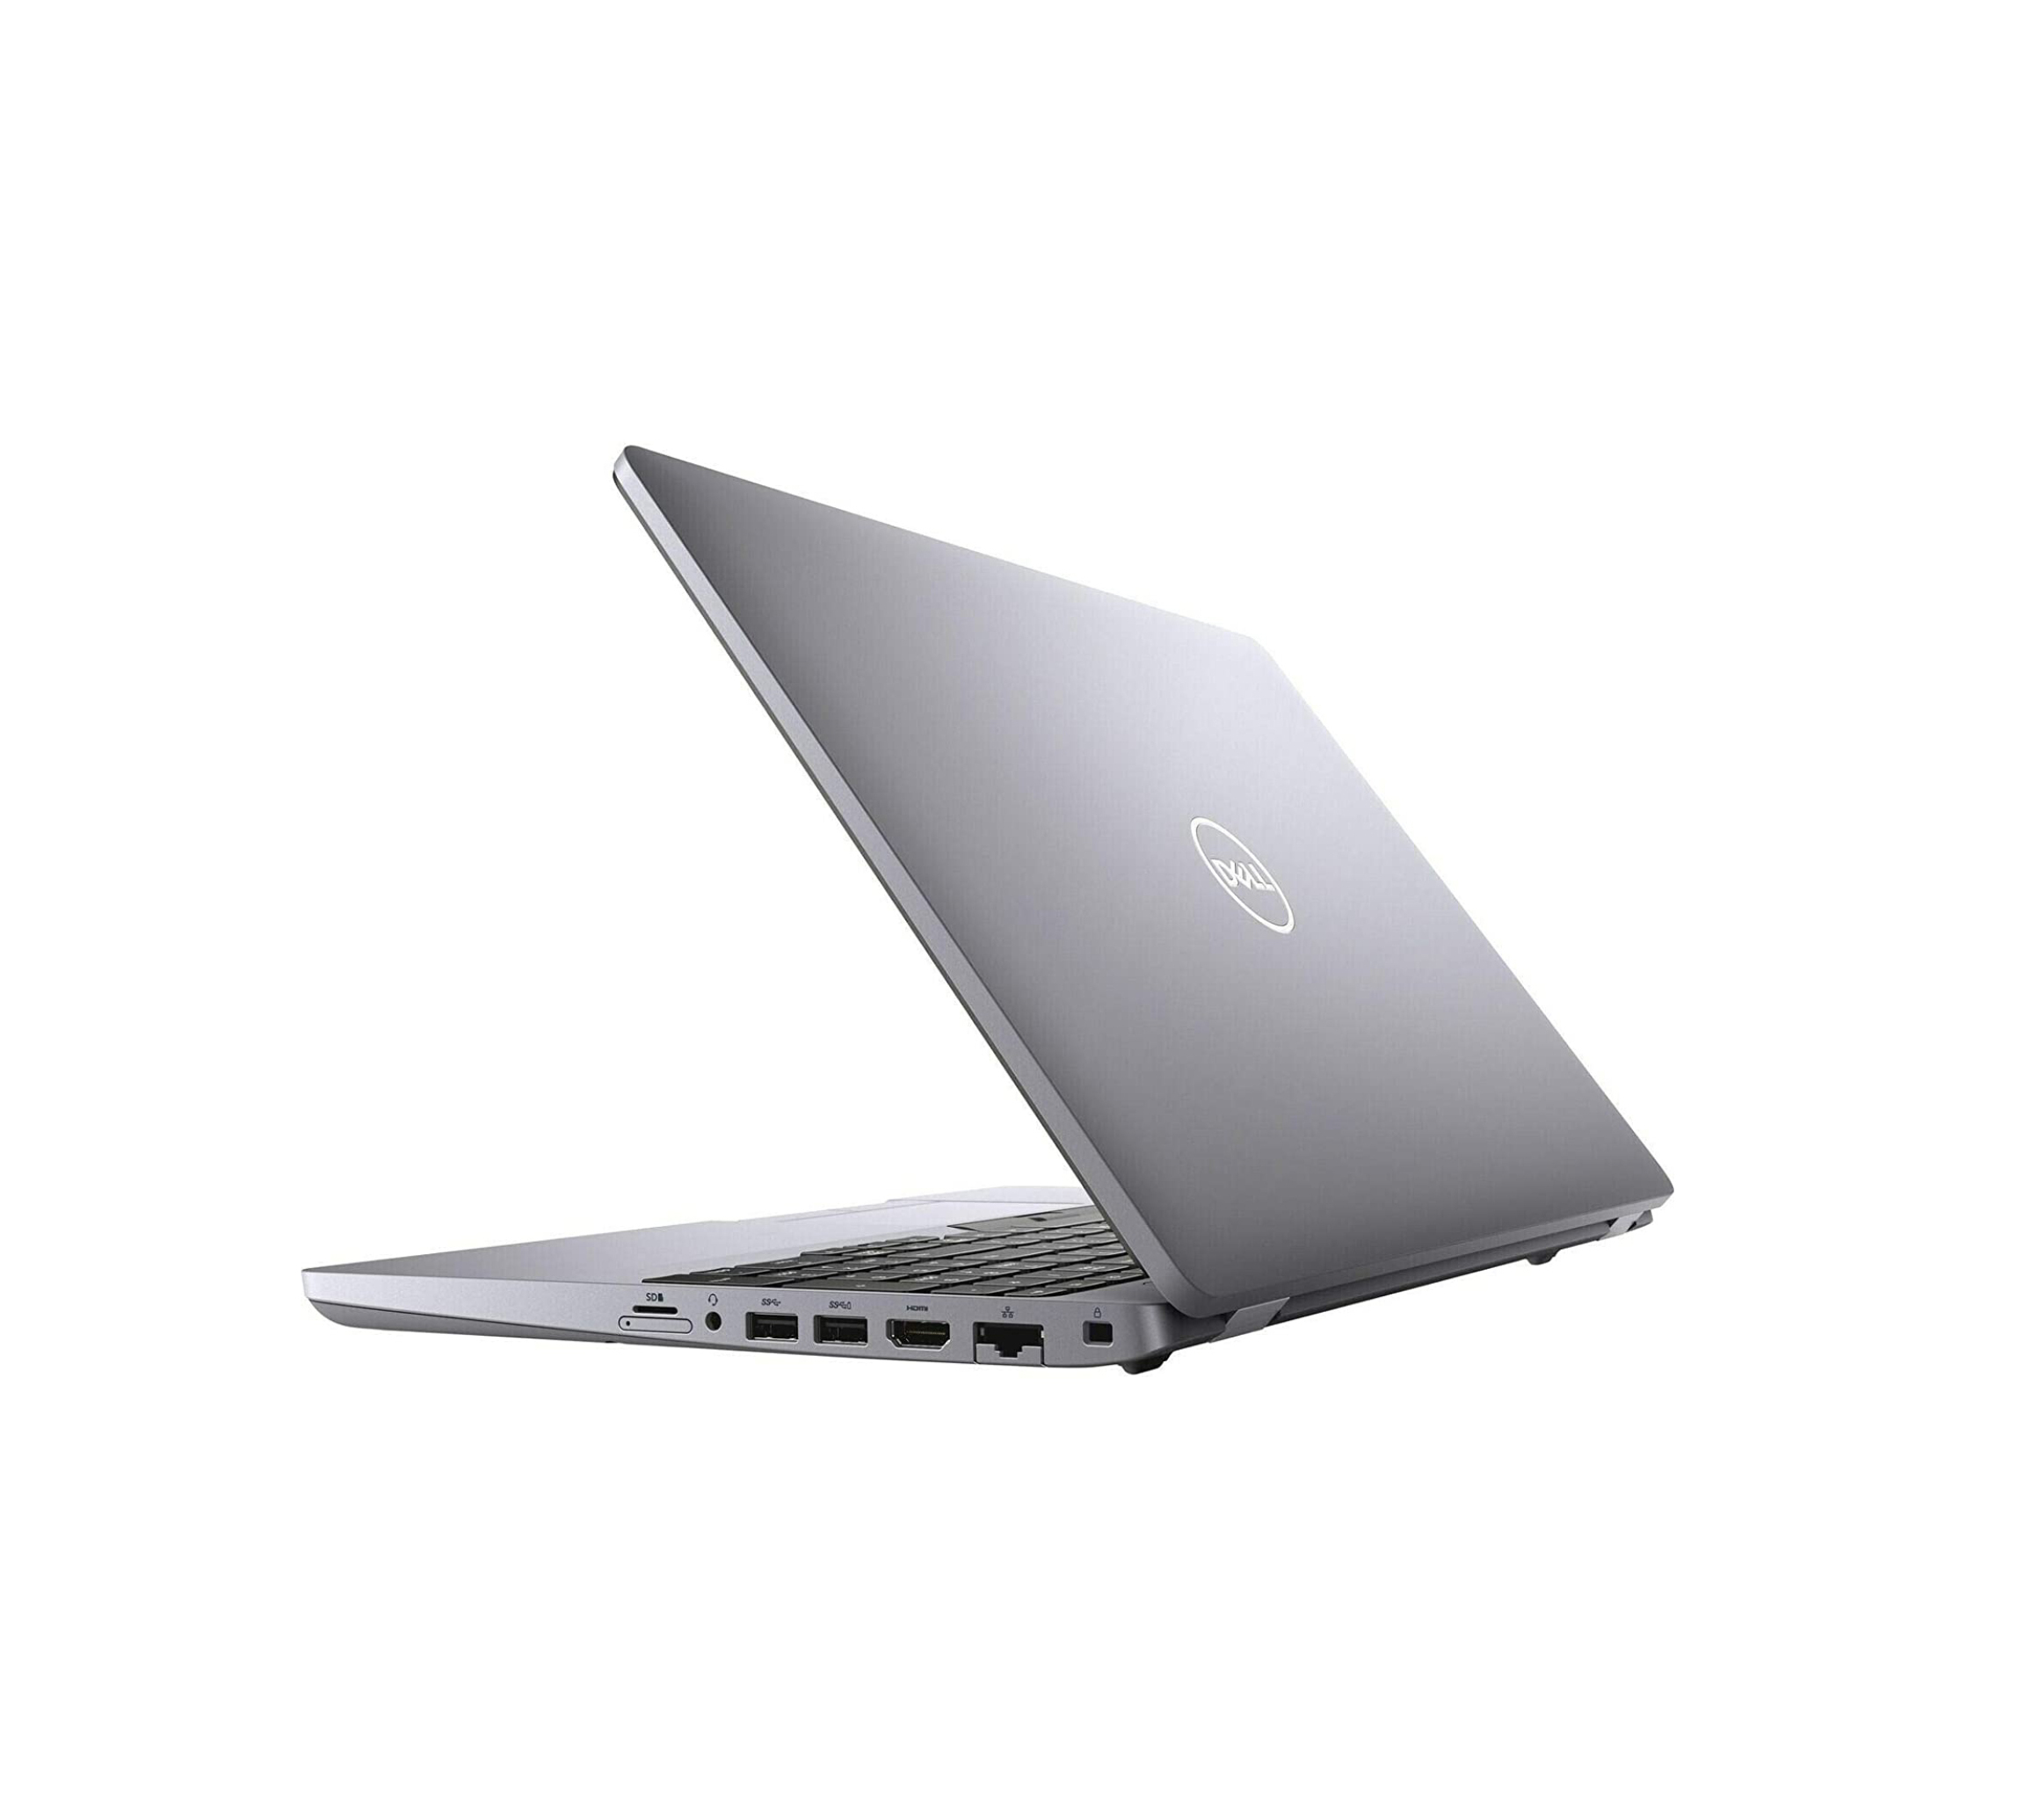  قیمت لپ تاپ دل 3551 مدل Dell Precision 3551 | لاکچری لپ تاپ 